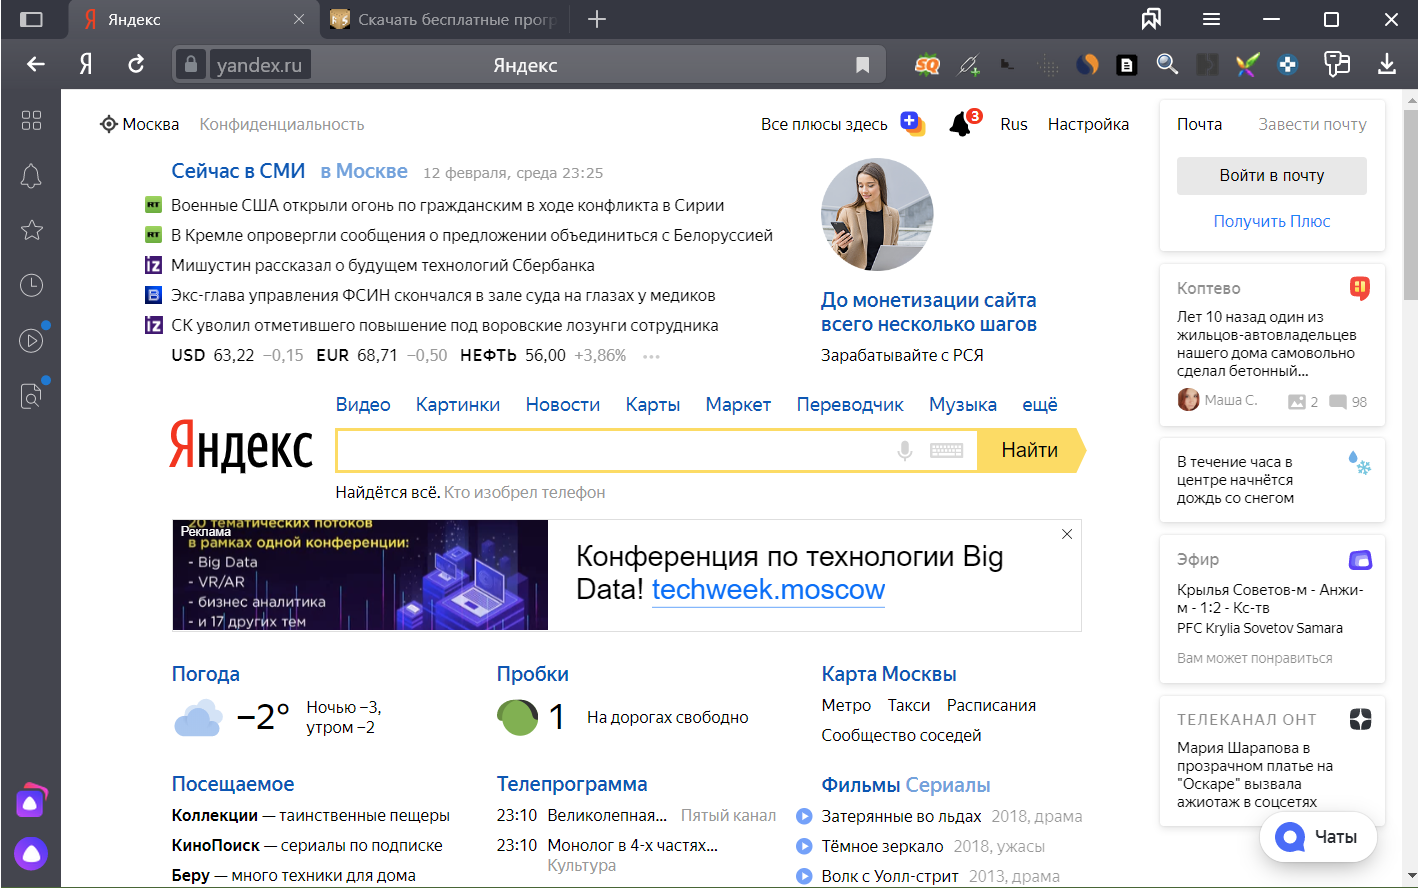 Яндекс Браузер - абсолютно новий веб-оглядач, представлений в 2012 році на технологічній конференції Yet another Conference